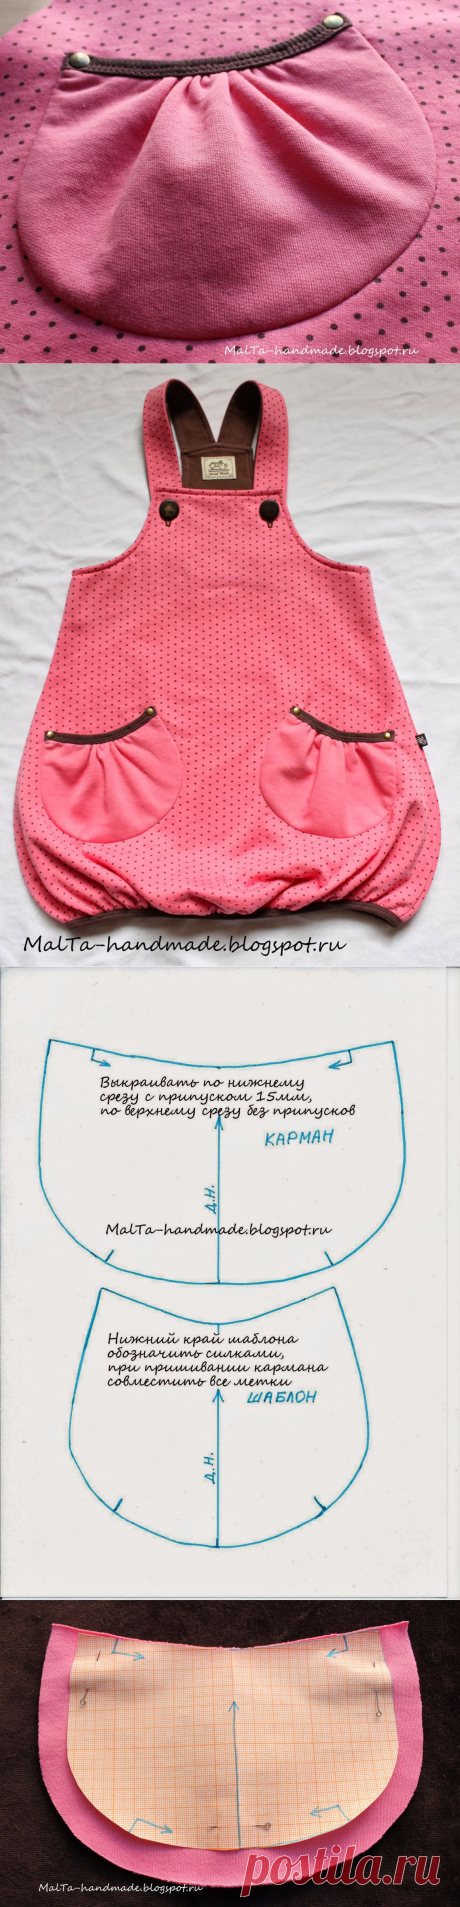 malta-handmade: МК и выкройка карманов со спрятанными швами притачивания